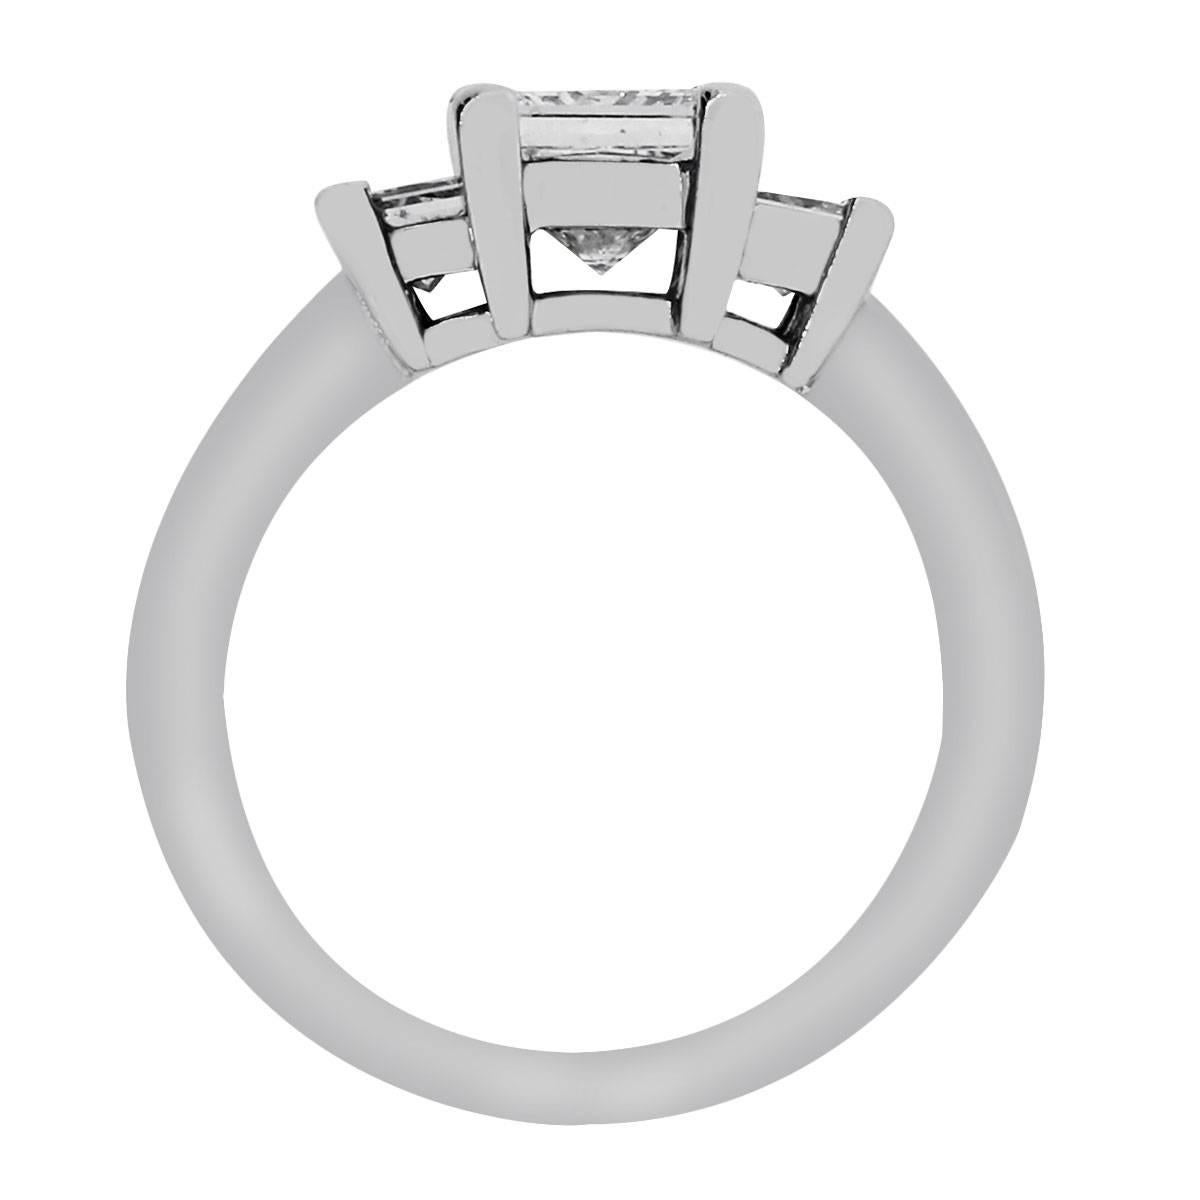 Women's or Men's GIA Certified 1.51 Carat Princess Cut Diamond Engagement Ring